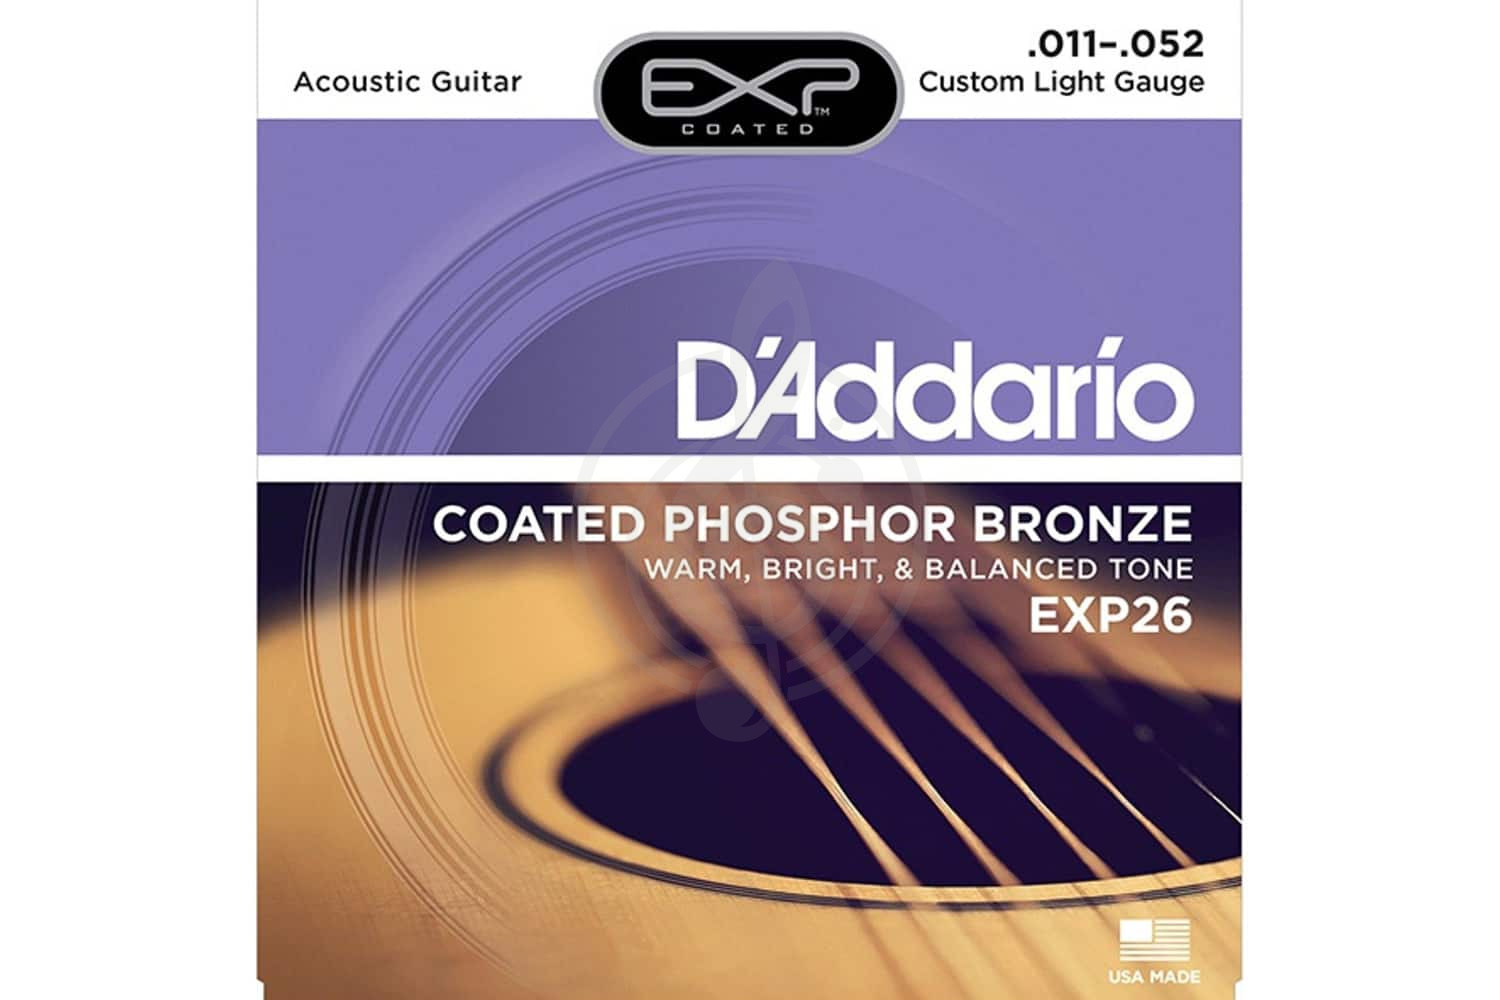 Струны для акустической гитары Струны для акустических гитар D'Addario D'Addario EXP26 Струны для акуст гитары 11-52 EXP26 - фото 1